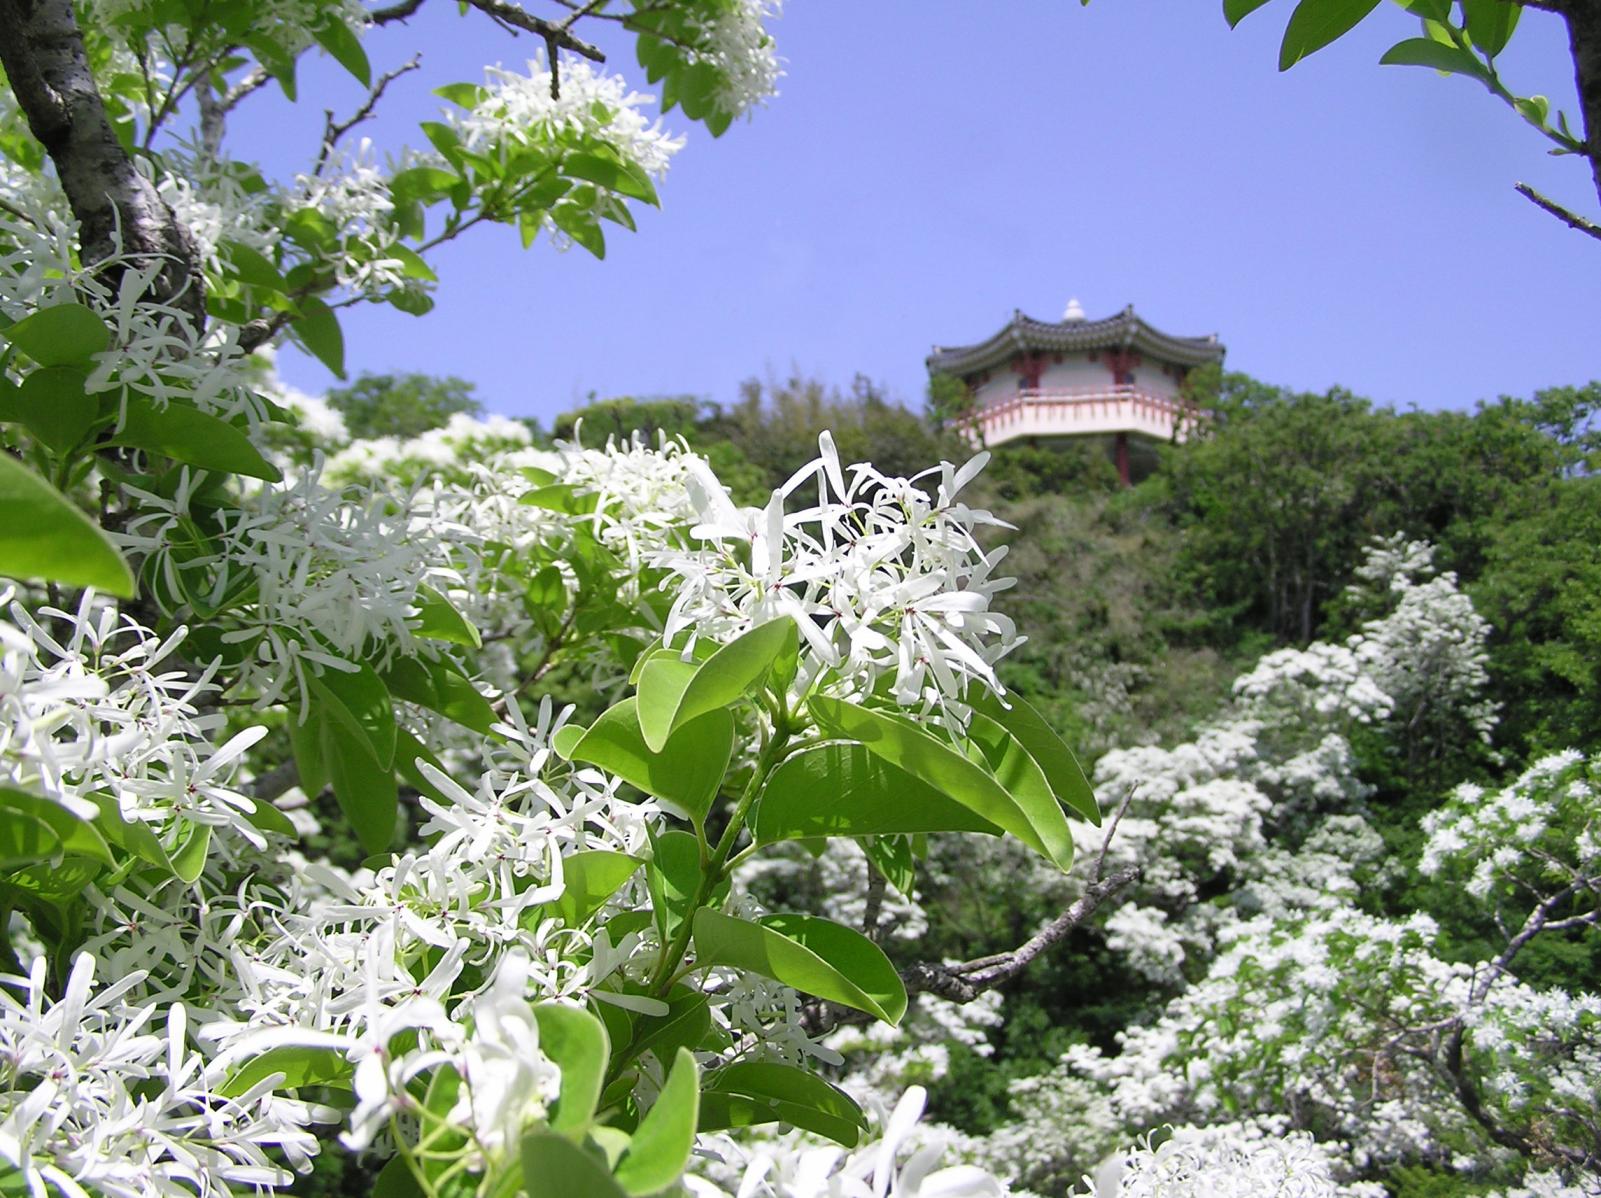 鰐浦のヒトツバタゴ 観光スポット 公式 長崎観光 旅行ポータルサイト ながさき旅ネット